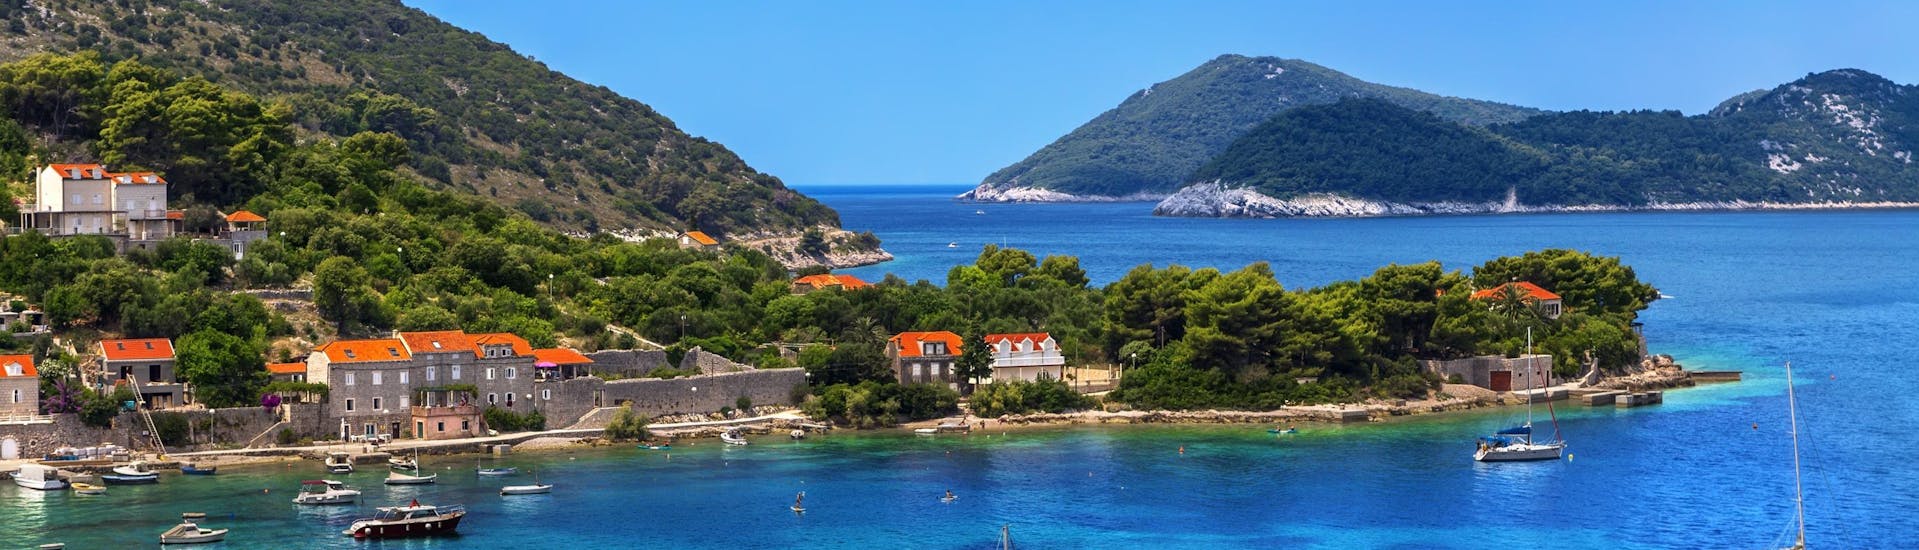 Foto van het eiland Kolocep, deel van de Elaphiti eilanden naast de kust van Dubrovnik, een populaire bestemming voor boottochten.